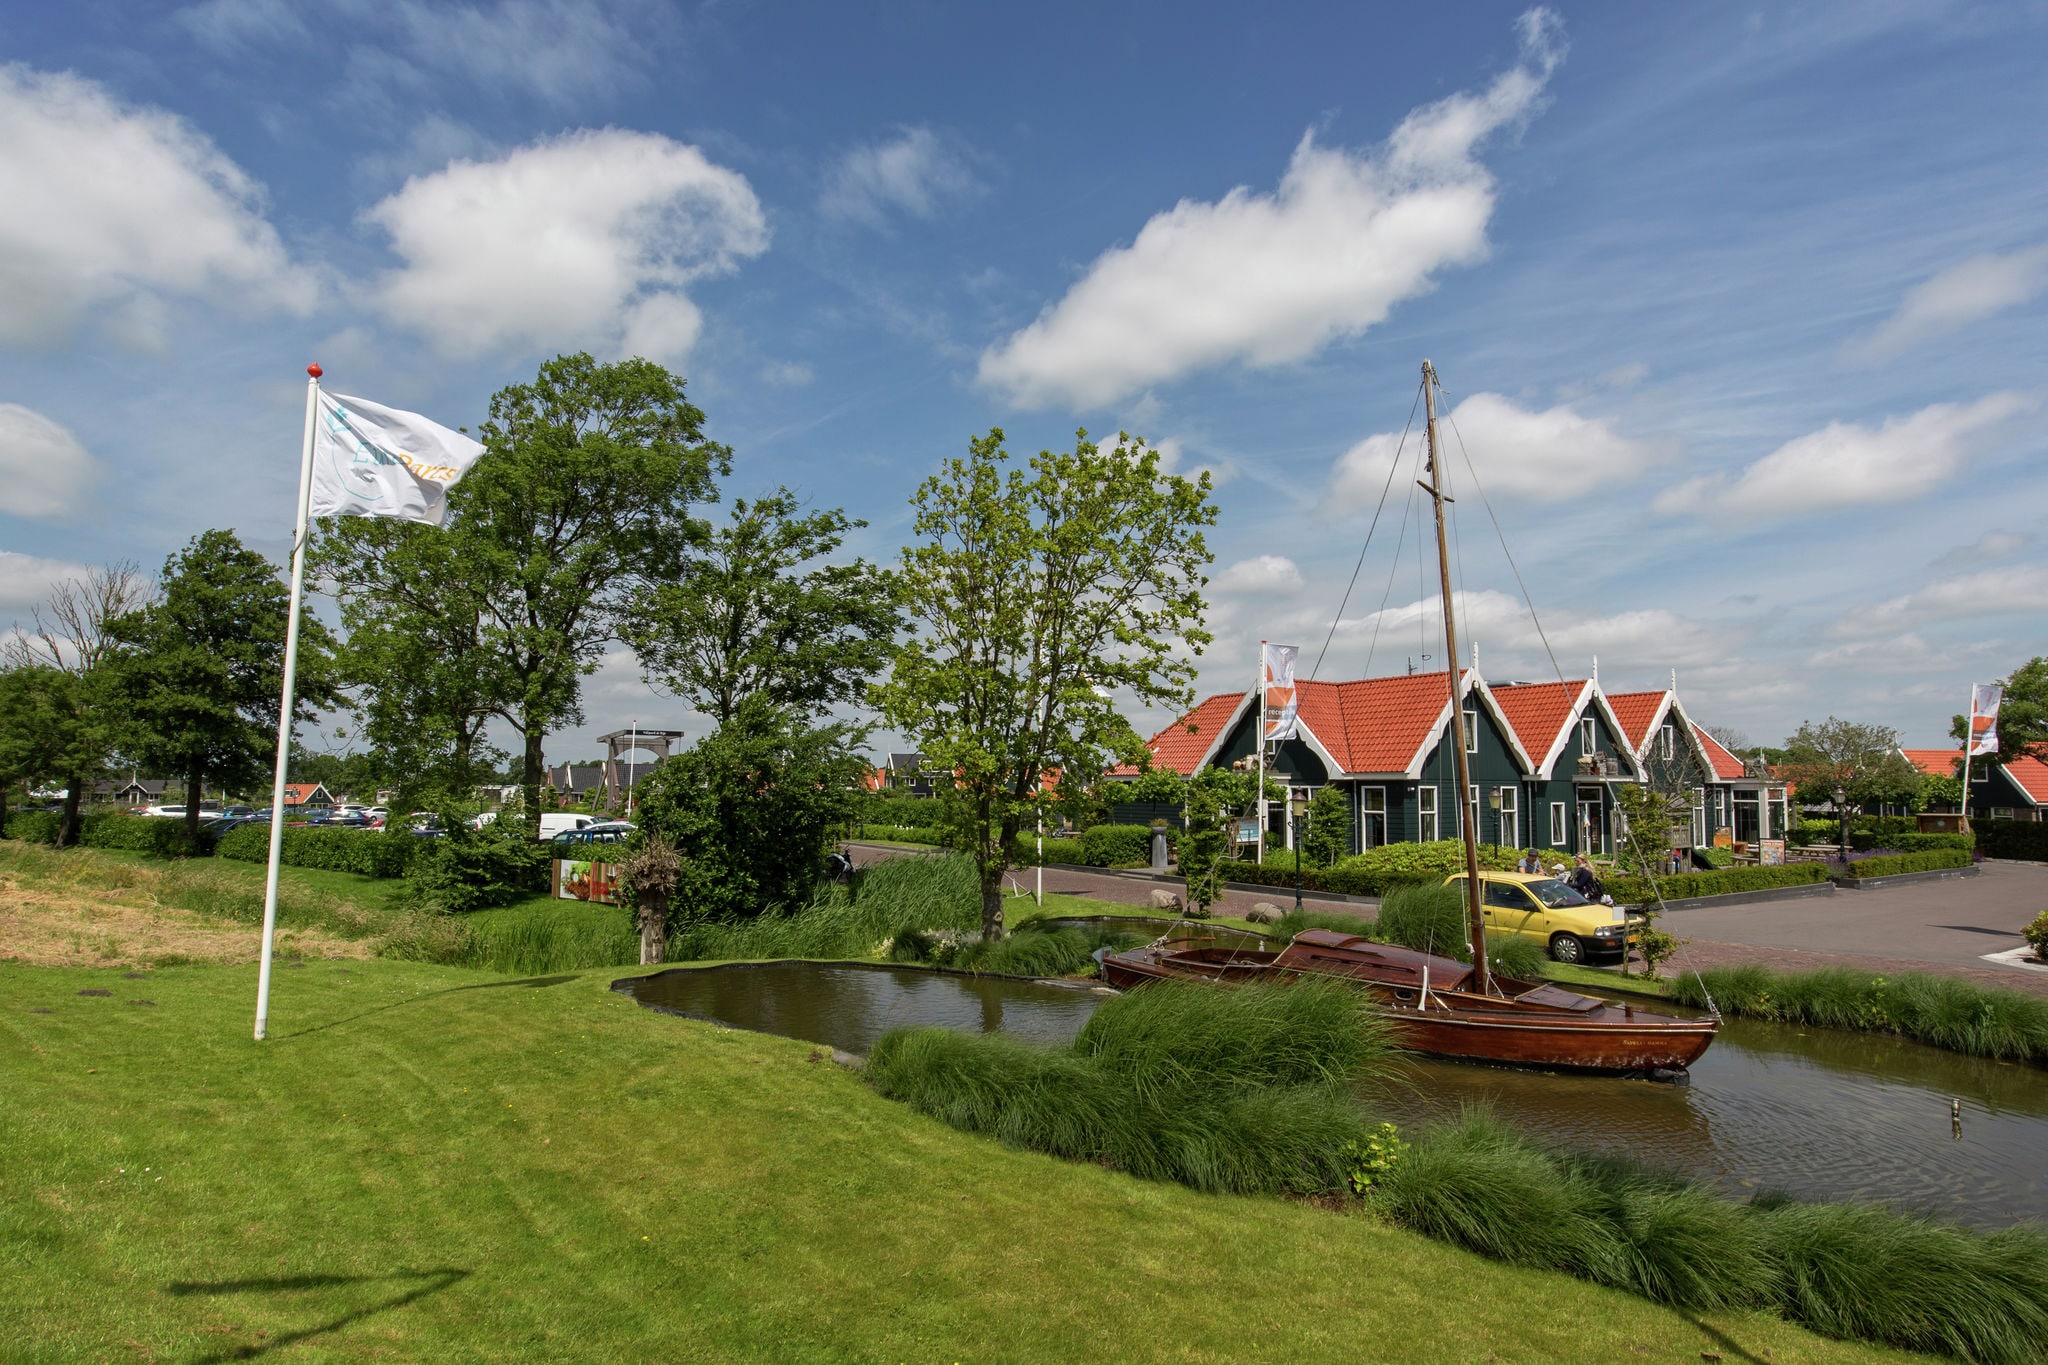 Maison de vacances de style Zaanse, à 15 km d'Alkmaar